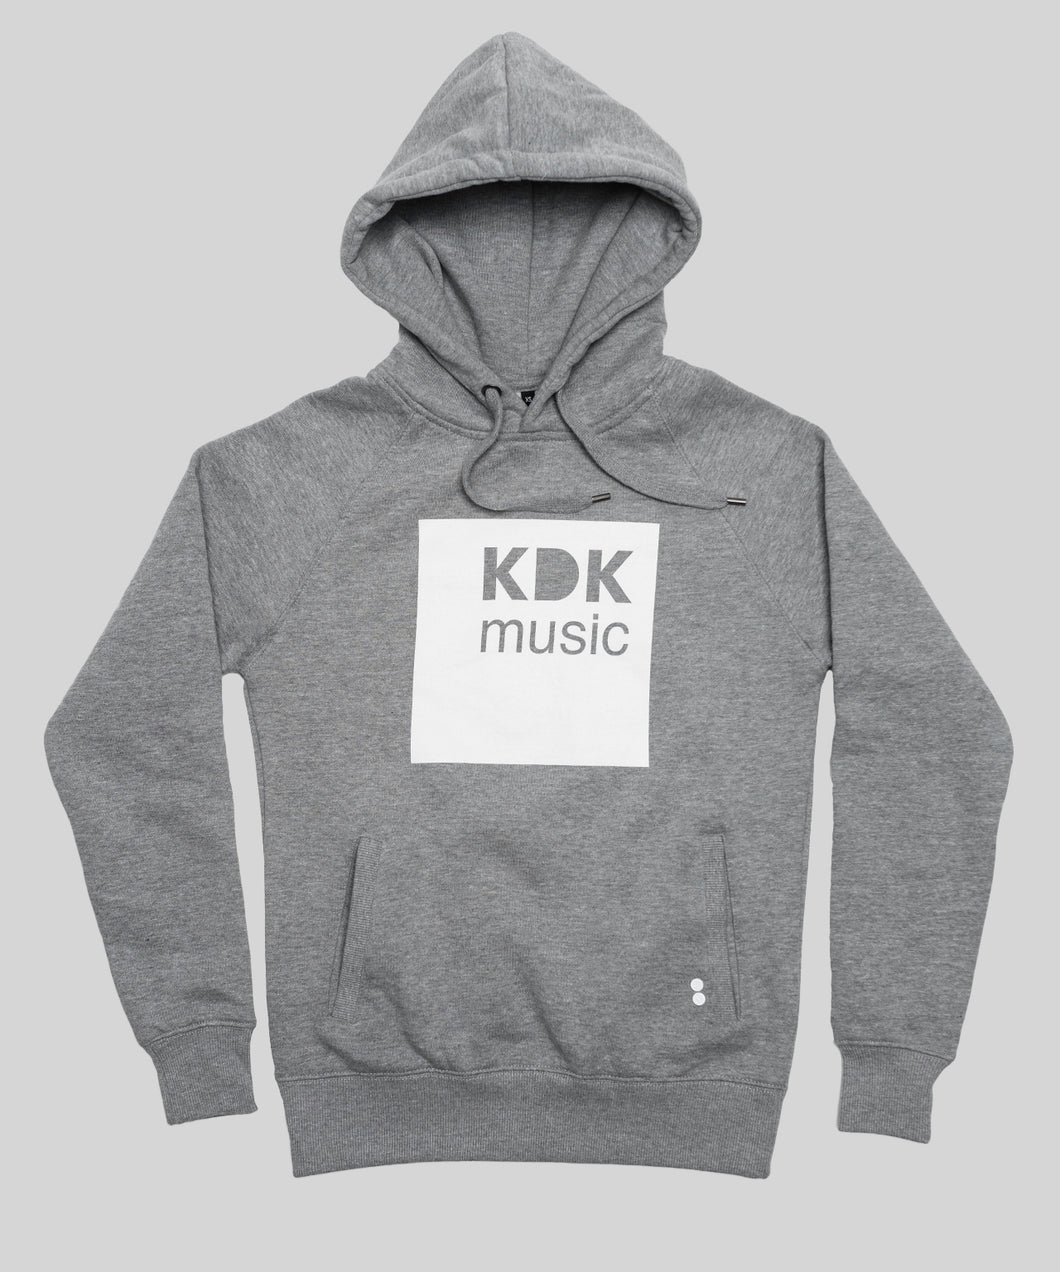 KDK Music Hoody grey